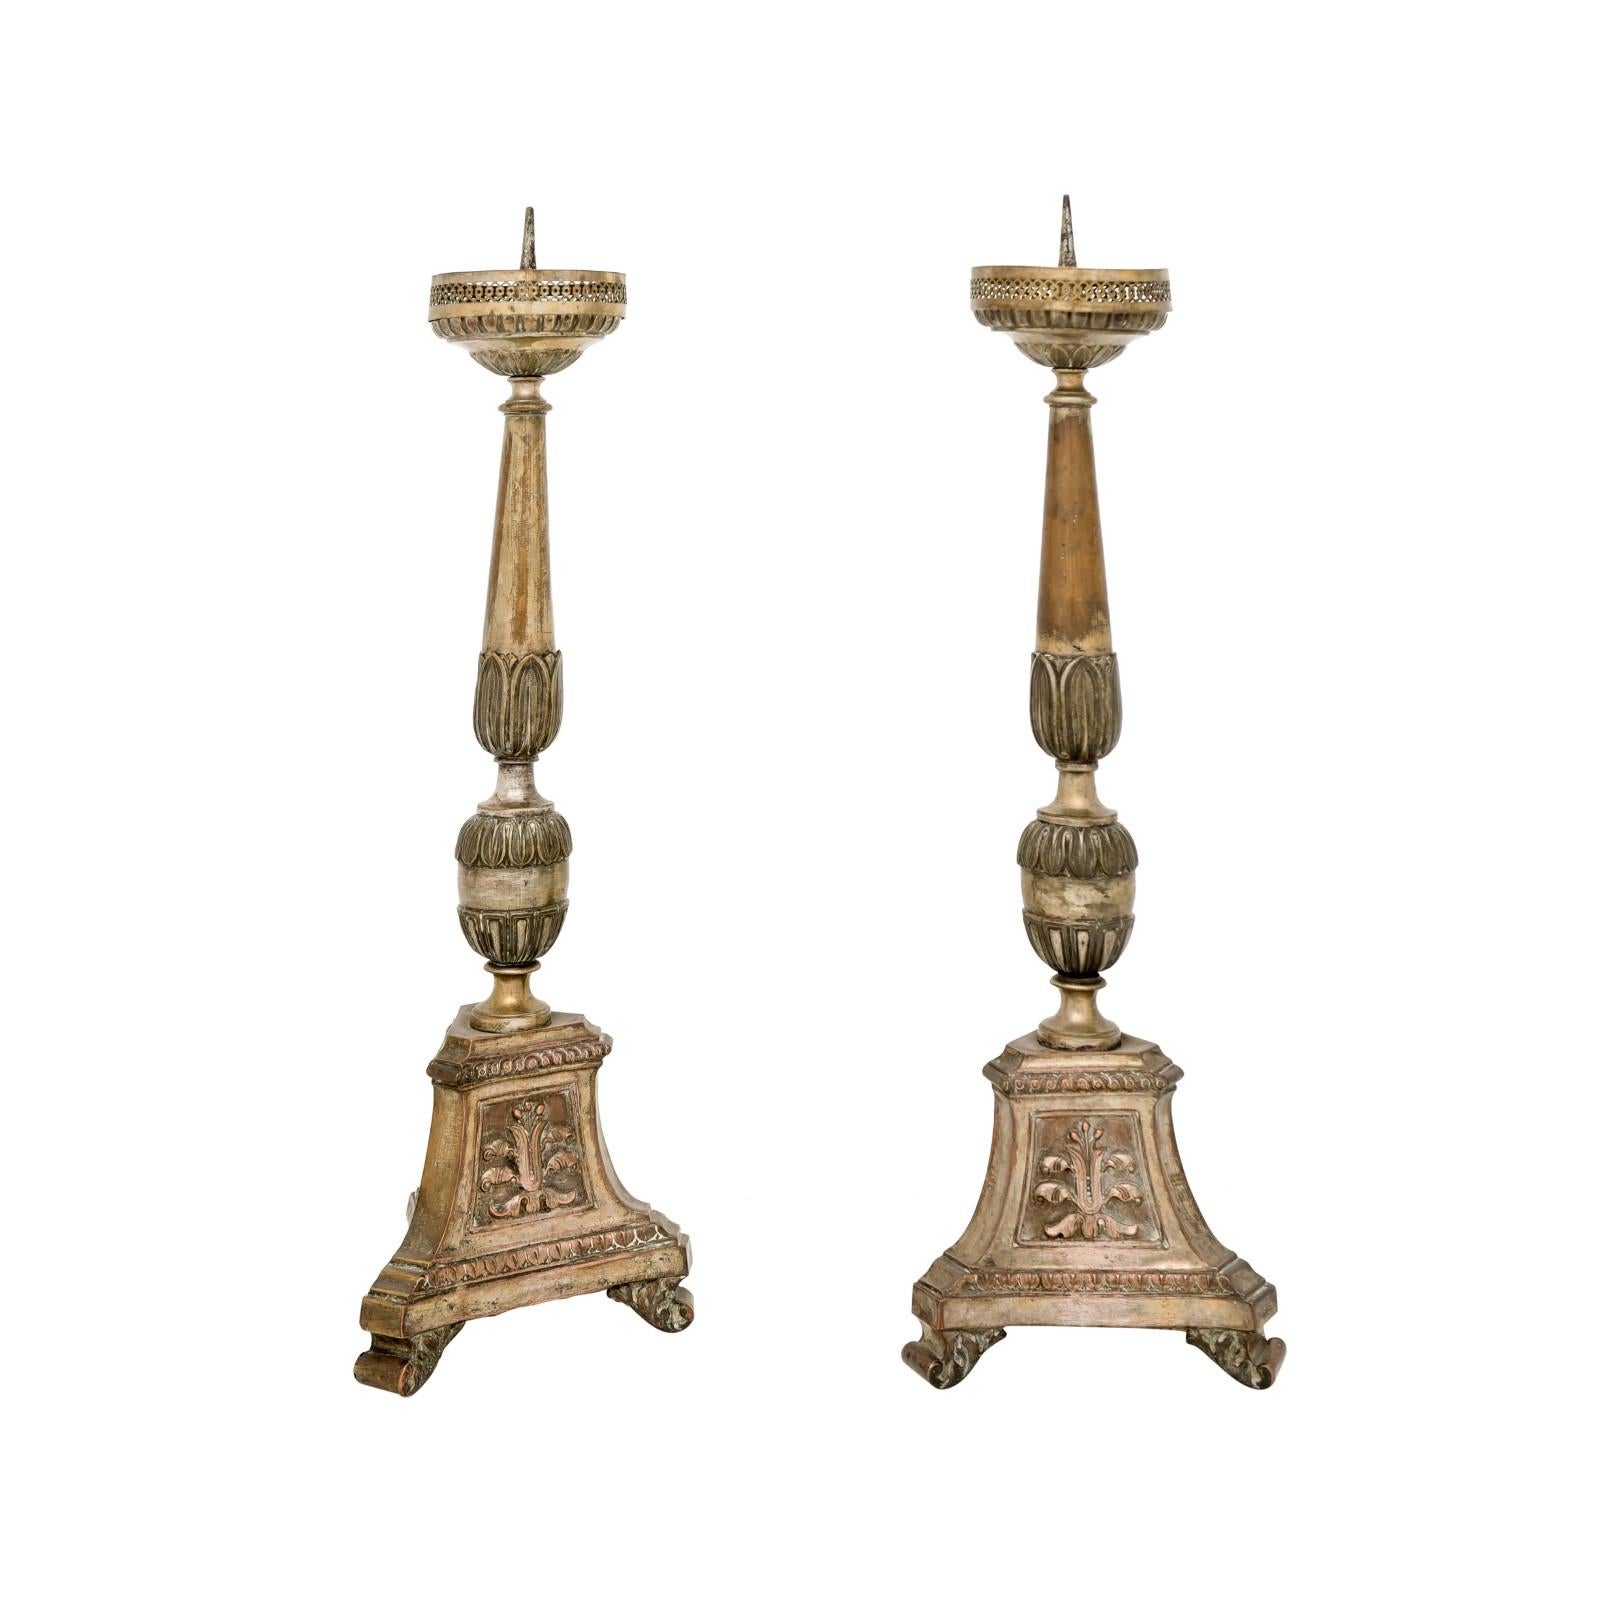 Ein Paar italienischer Metall-Kerzenhalter aus dem 19. Jahrhundert, mit Silber- und Goldtönen, sehr schönem, authentischem, gealtertem Finish, geschnitztem Laub und dreiteiligen Basen. Dieses Paar Kerzenständer wurde im 19. Jahrhundert in Italien